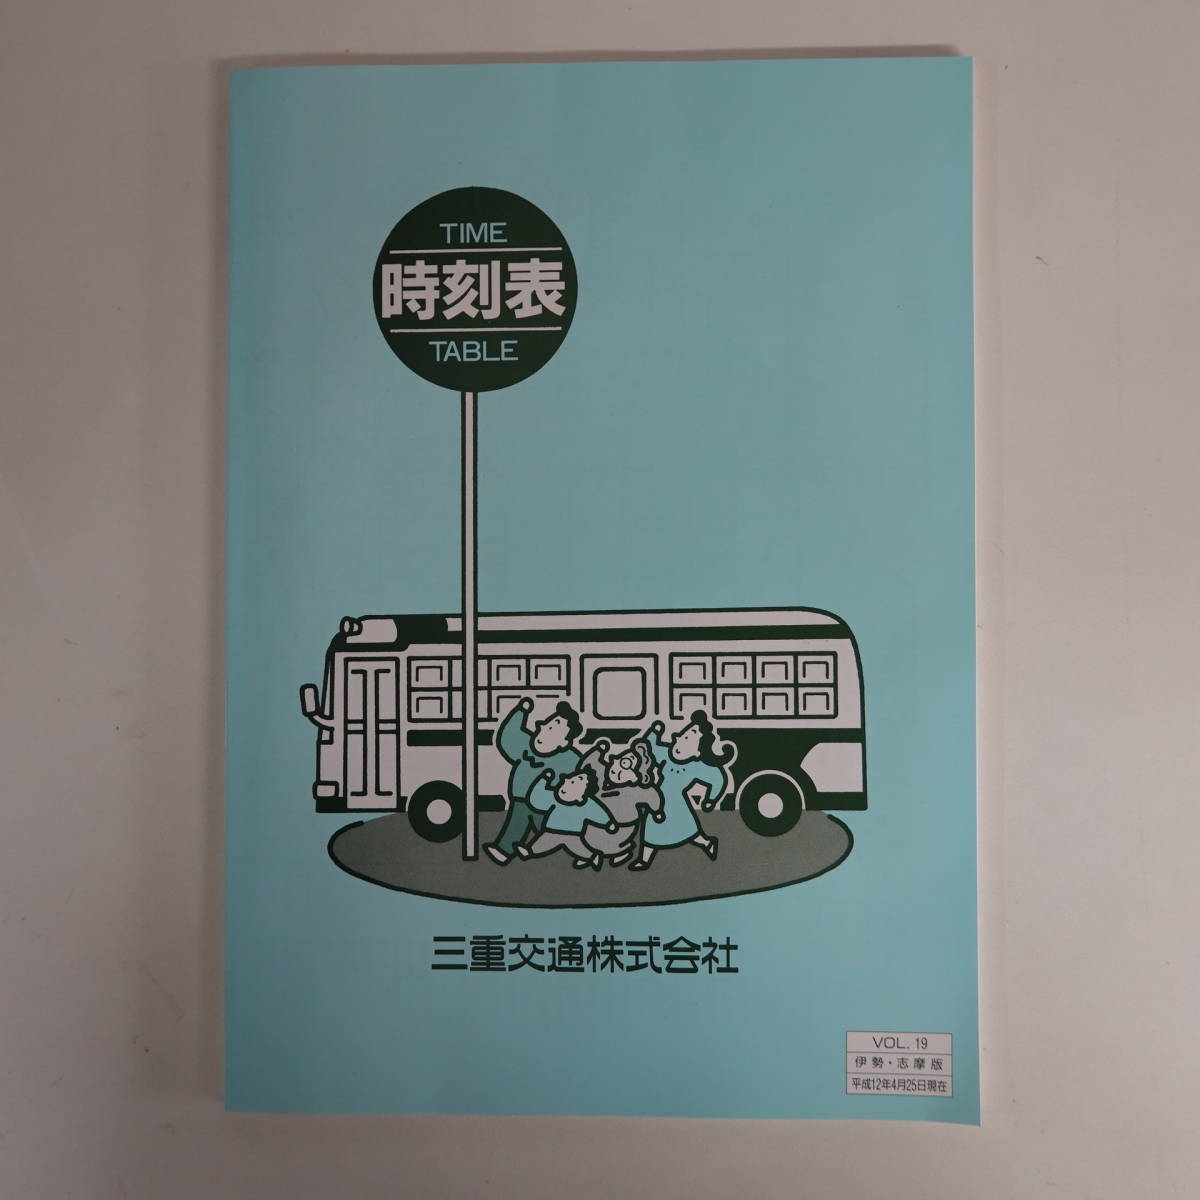 9634三重交通バス 時刻表 平成12年vol.13 伊勢志摩版の画像1